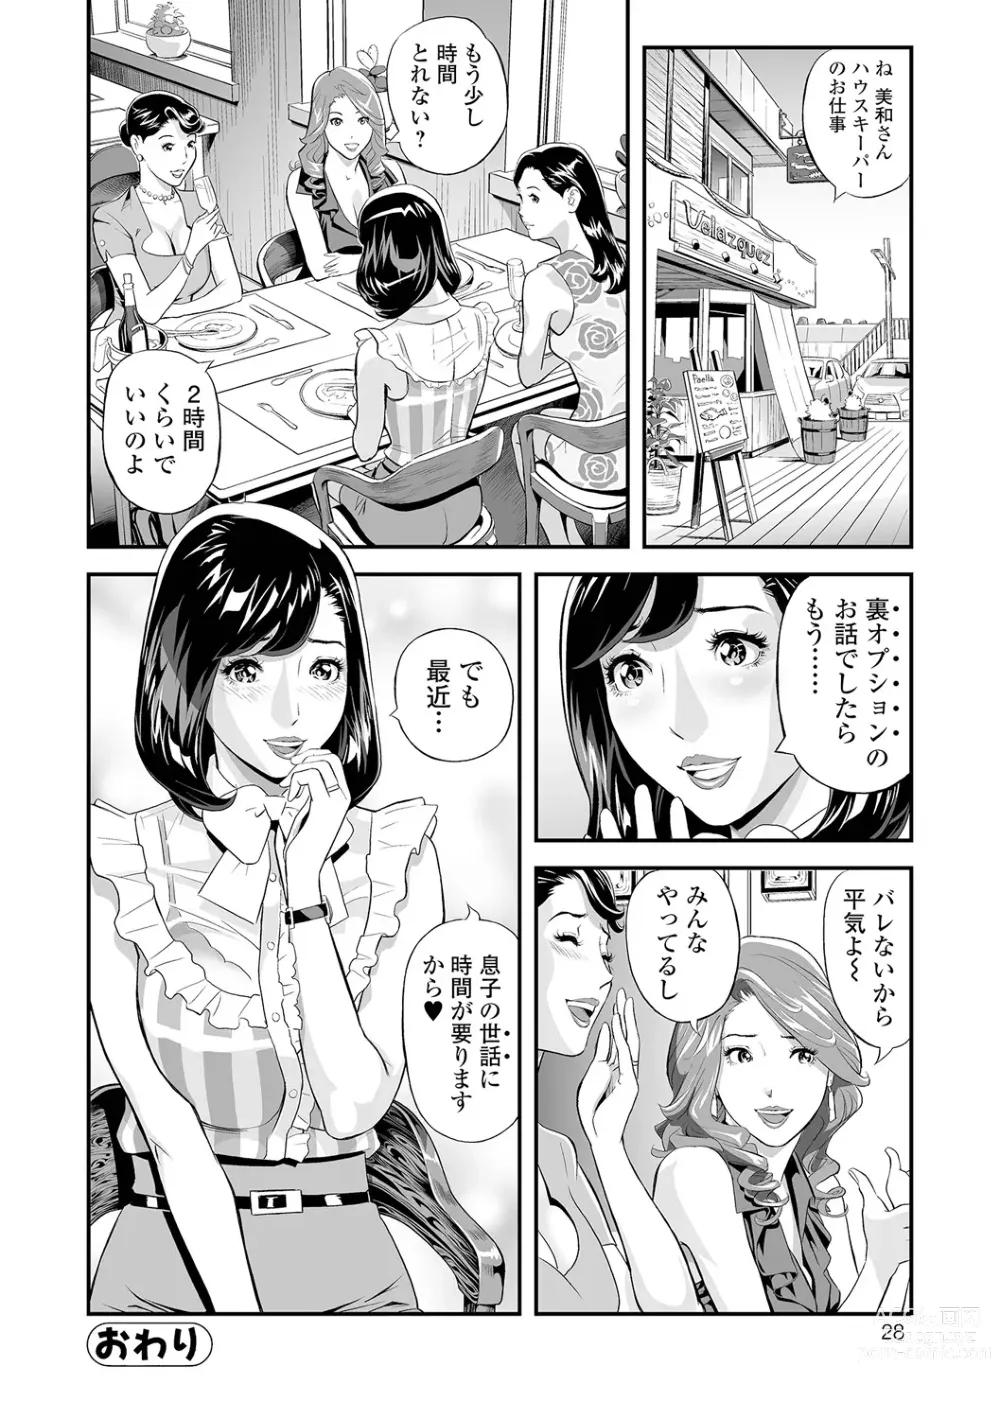 Page 28 of manga Elegant Erogant